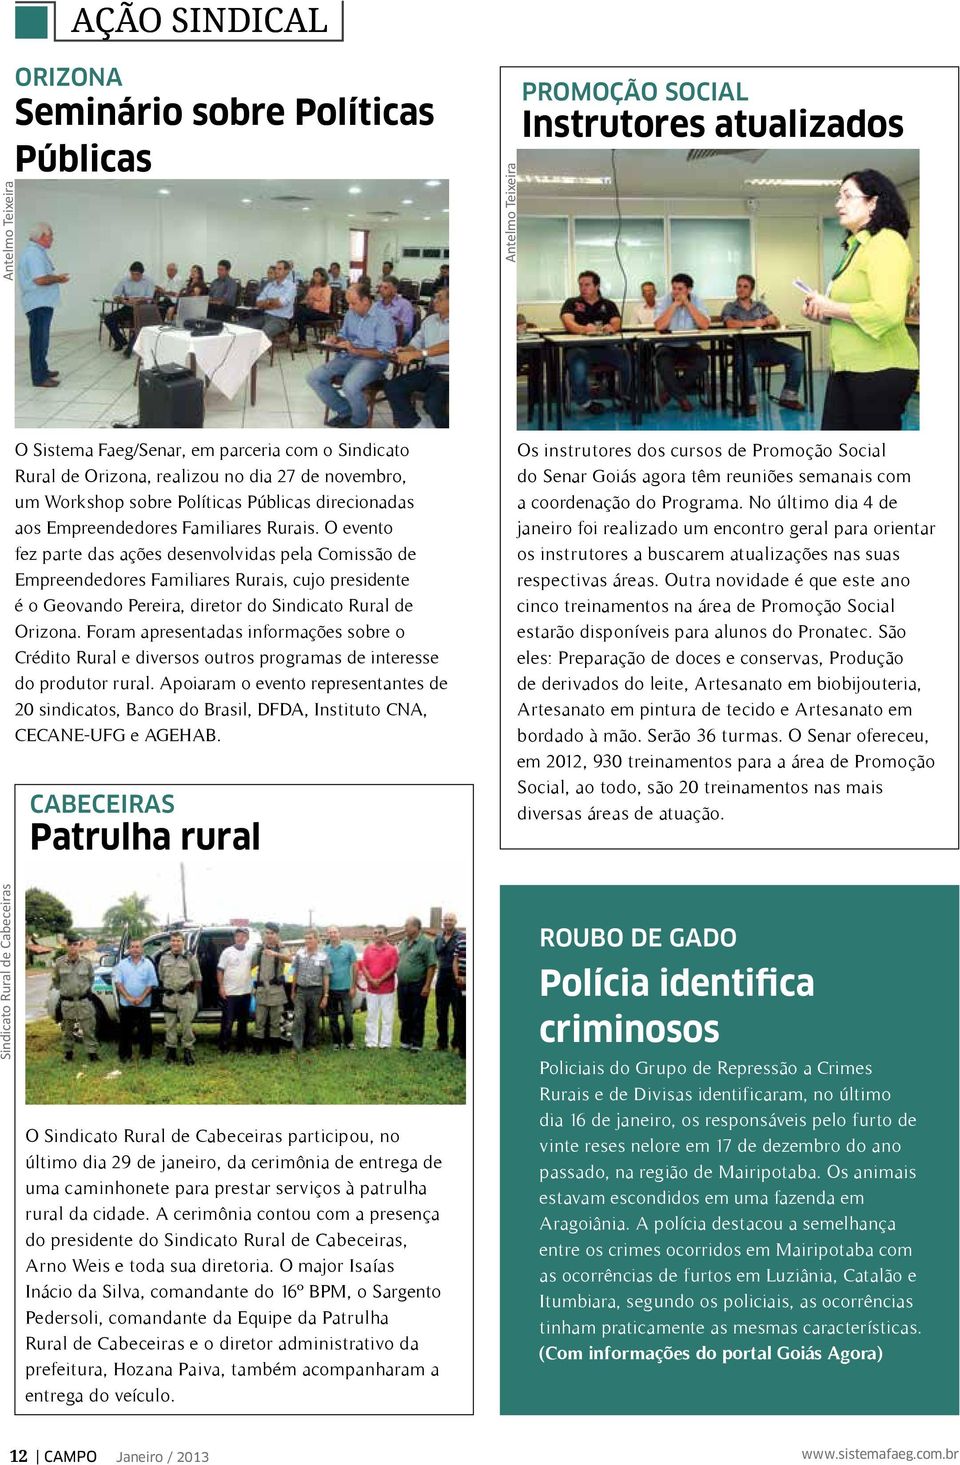 O evento fez parte das ações desenvolvidas pela Comissão de Empreendedores Familiares Rurais, cujo presidente é o Geovando Pereira, diretor do Sindicato Rural de Orizona.